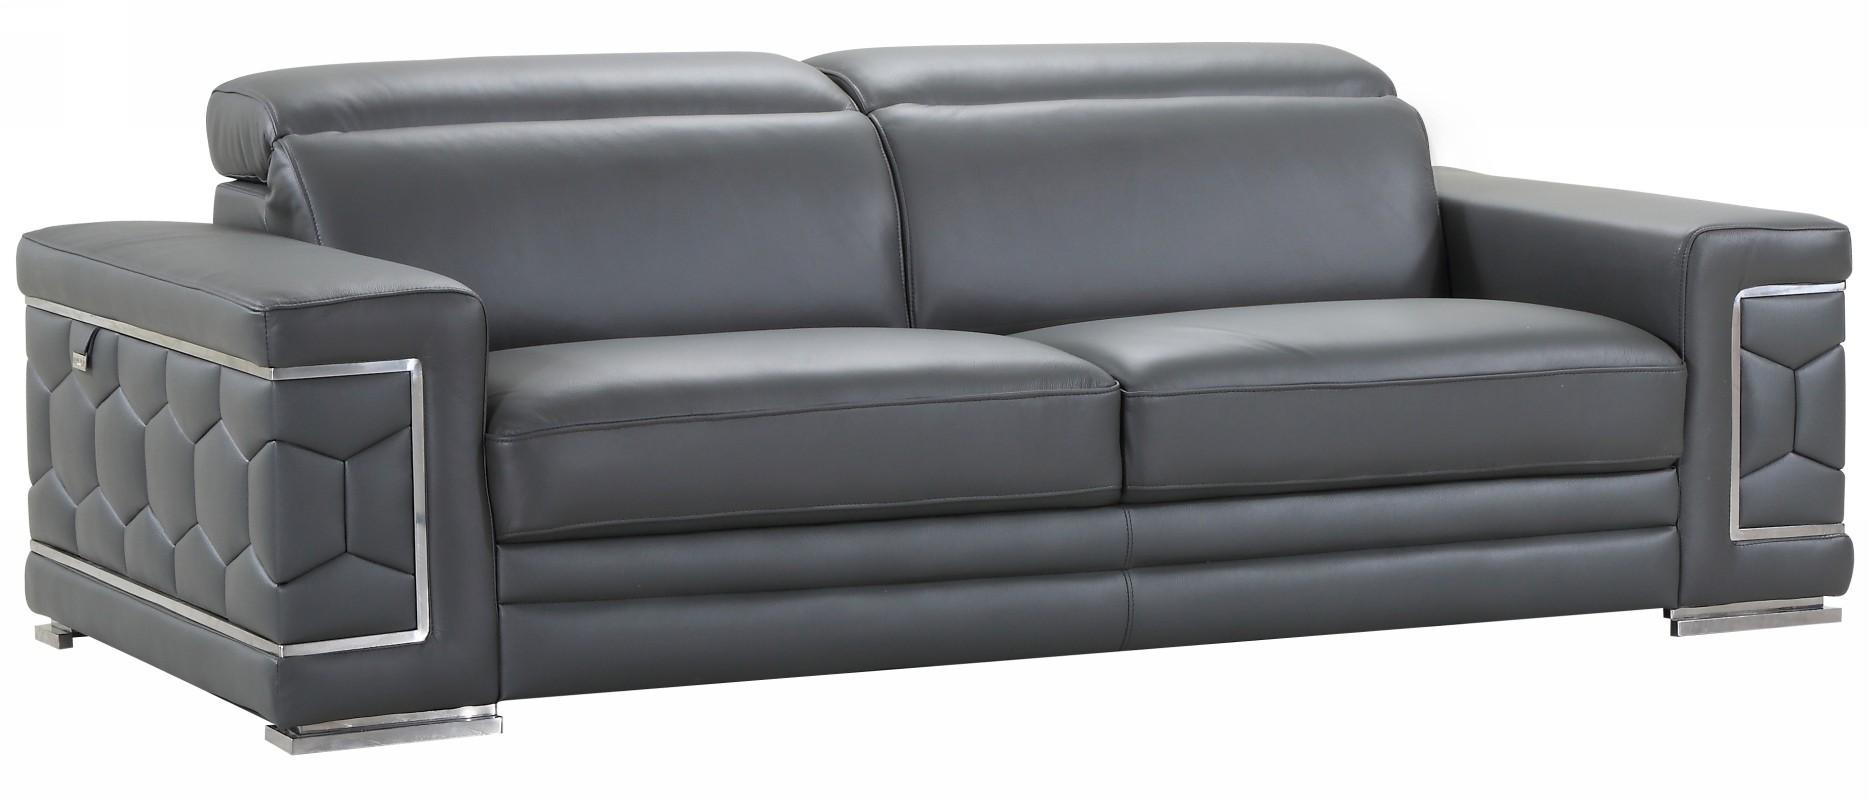 Contemporary Sofa 692 692-DARK_GRAY-S in Dark Gray Genuine Leather